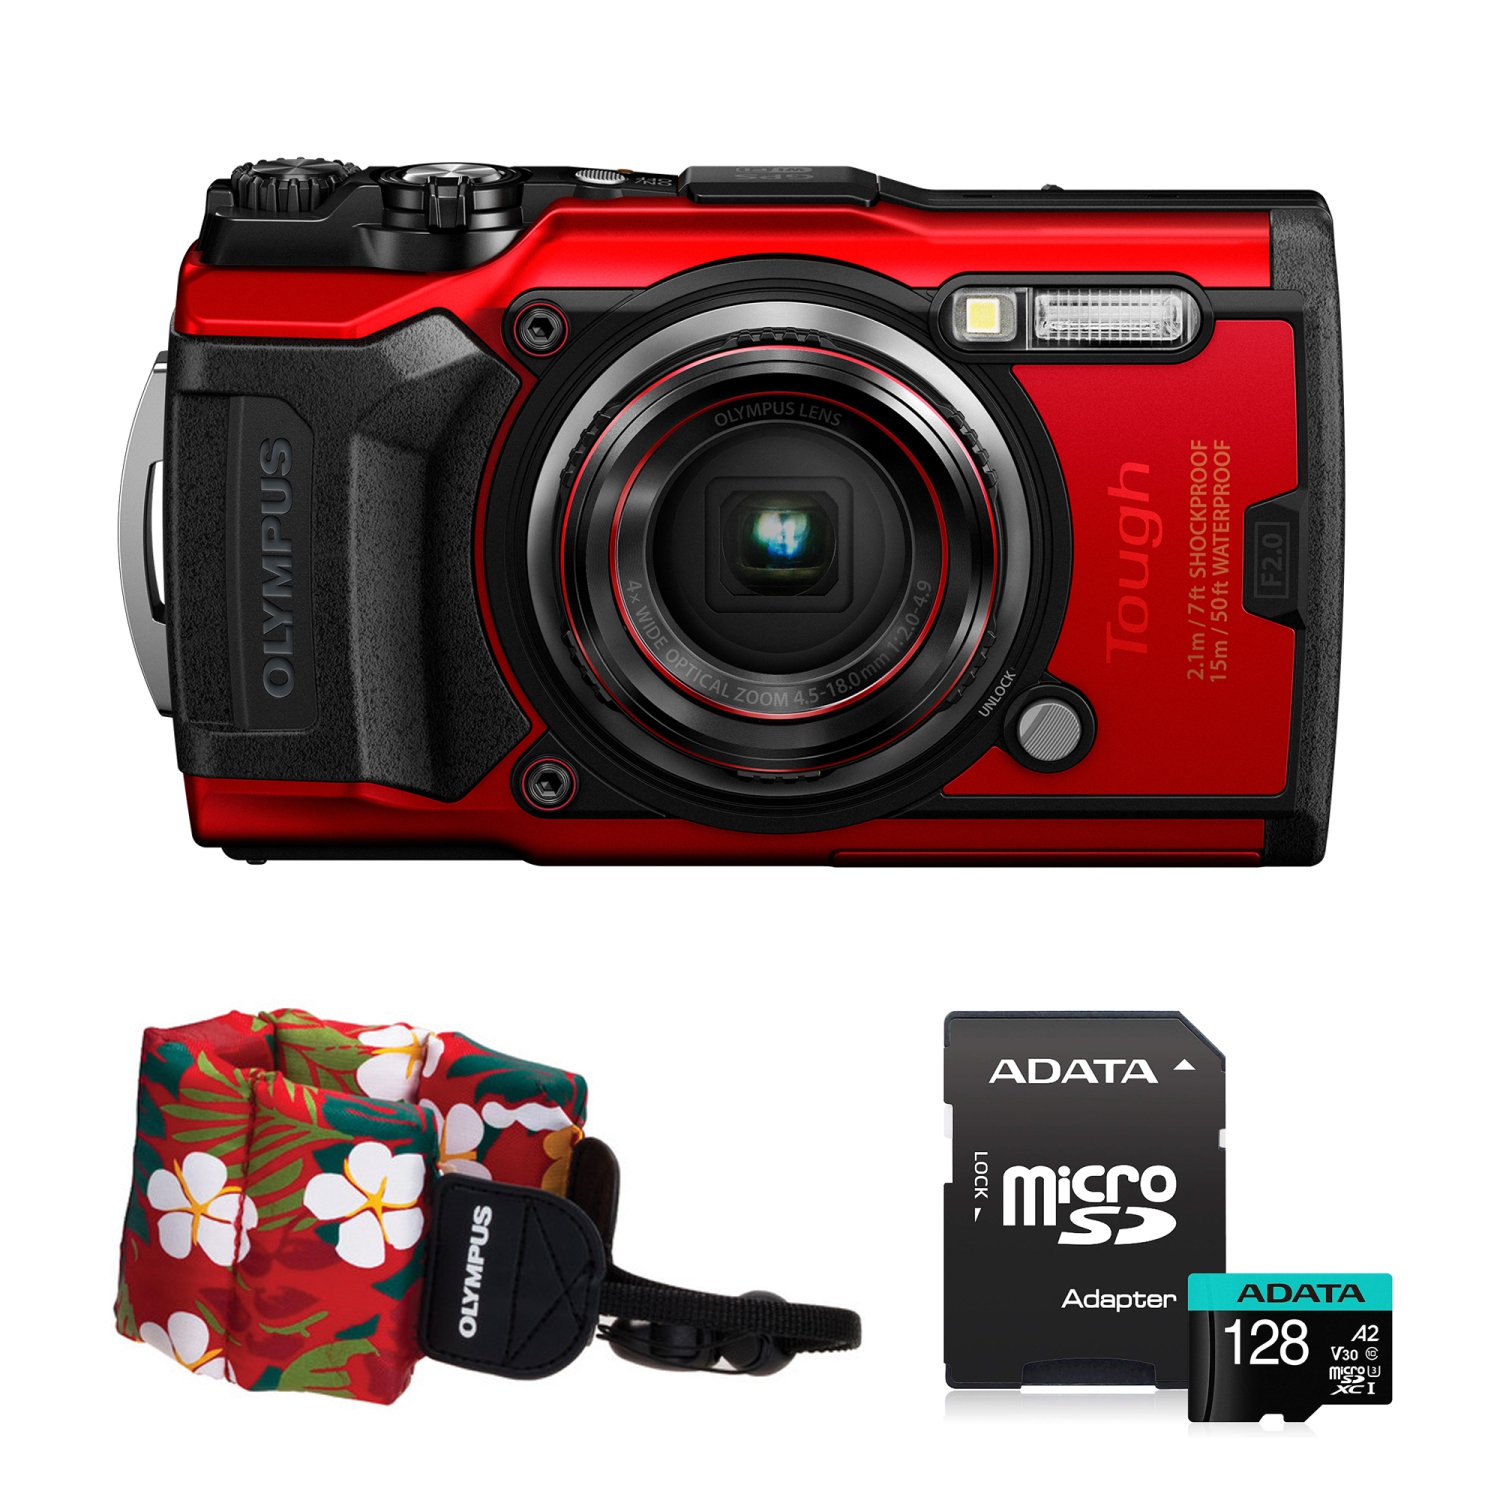 Olympus Tough TG-6 Digital Camera (Red) V104210RU000 + Adata 128GB + Olympus Floating Foam Strap (Island Red) Kit Bundle